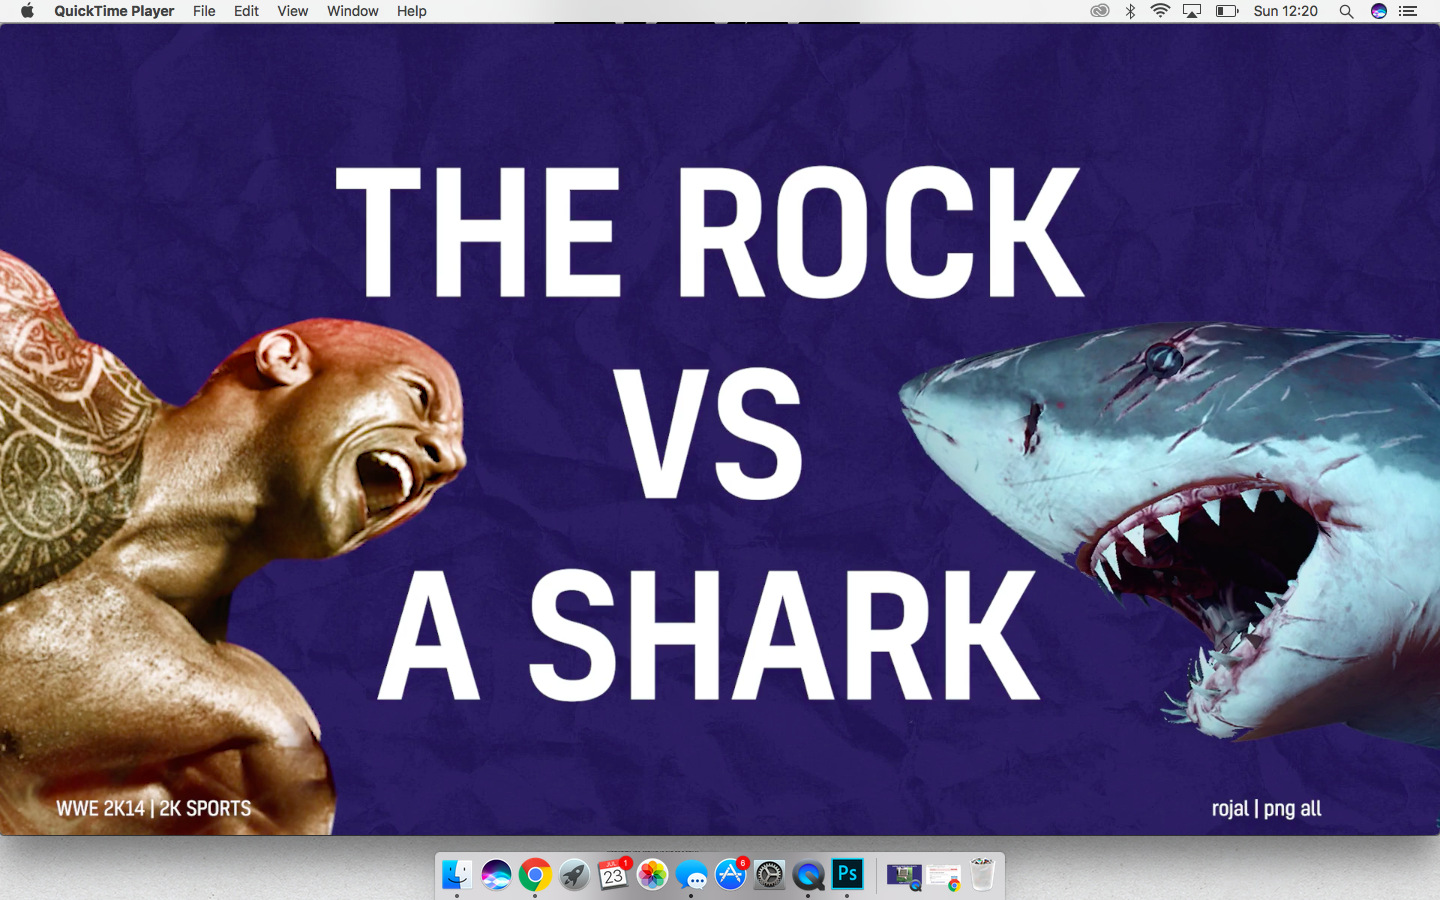 The Rock vs A Shark